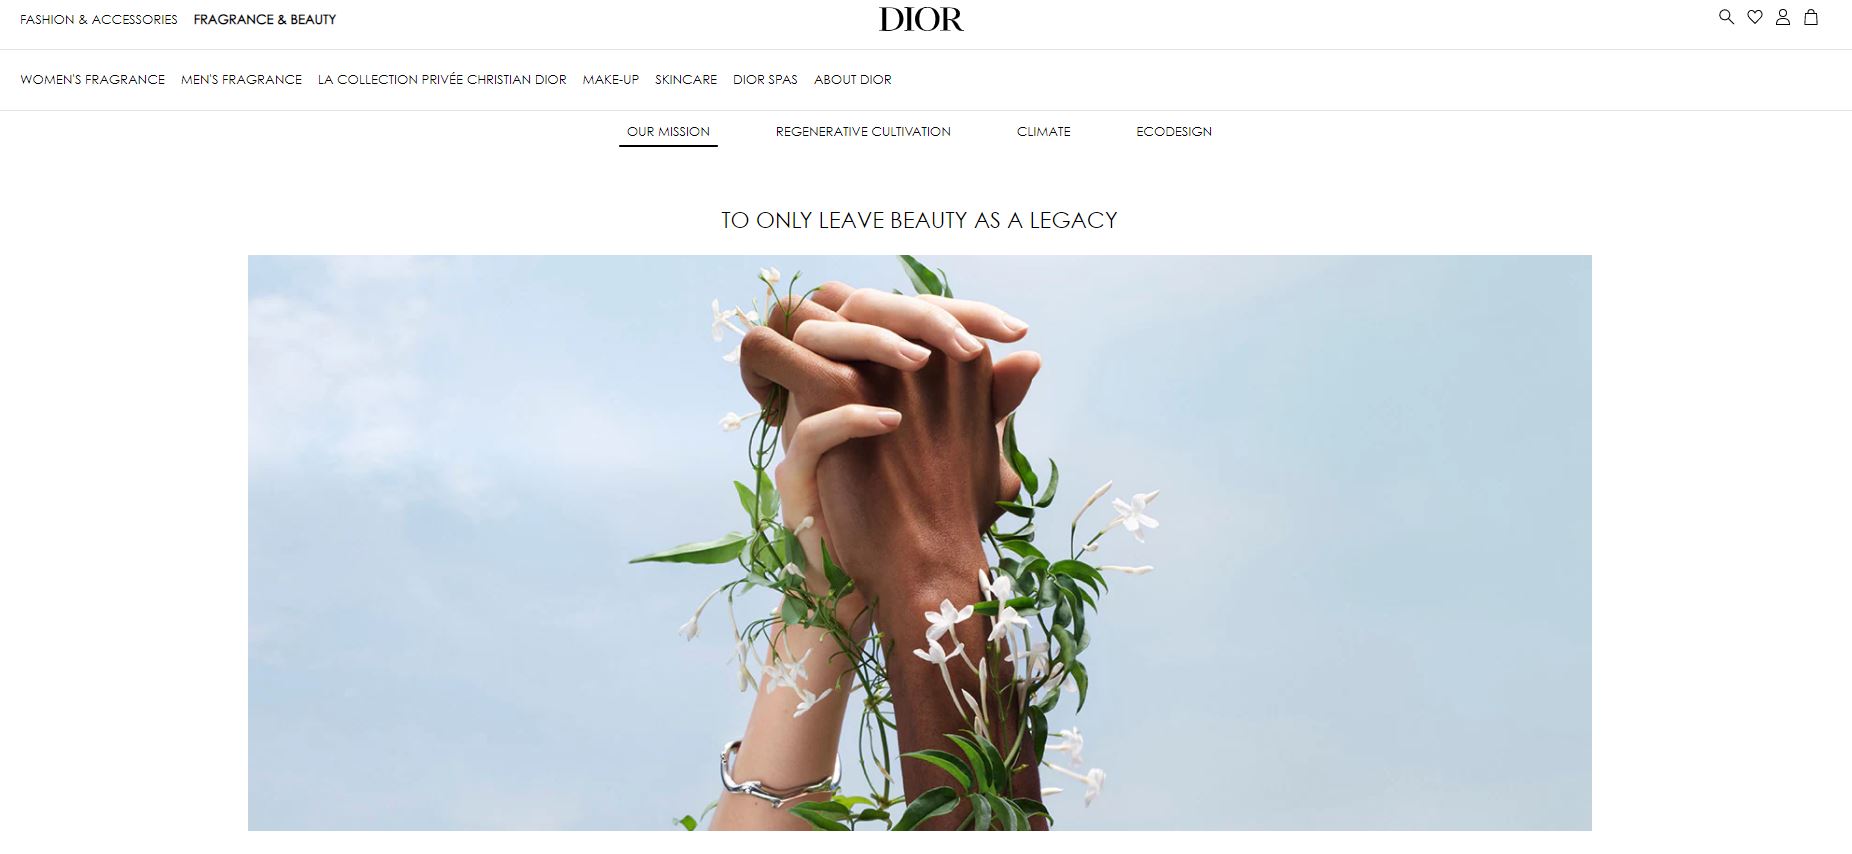 迪奥美妆公布最新可持续发展战略：只把“美丽”作为遗产留给世界